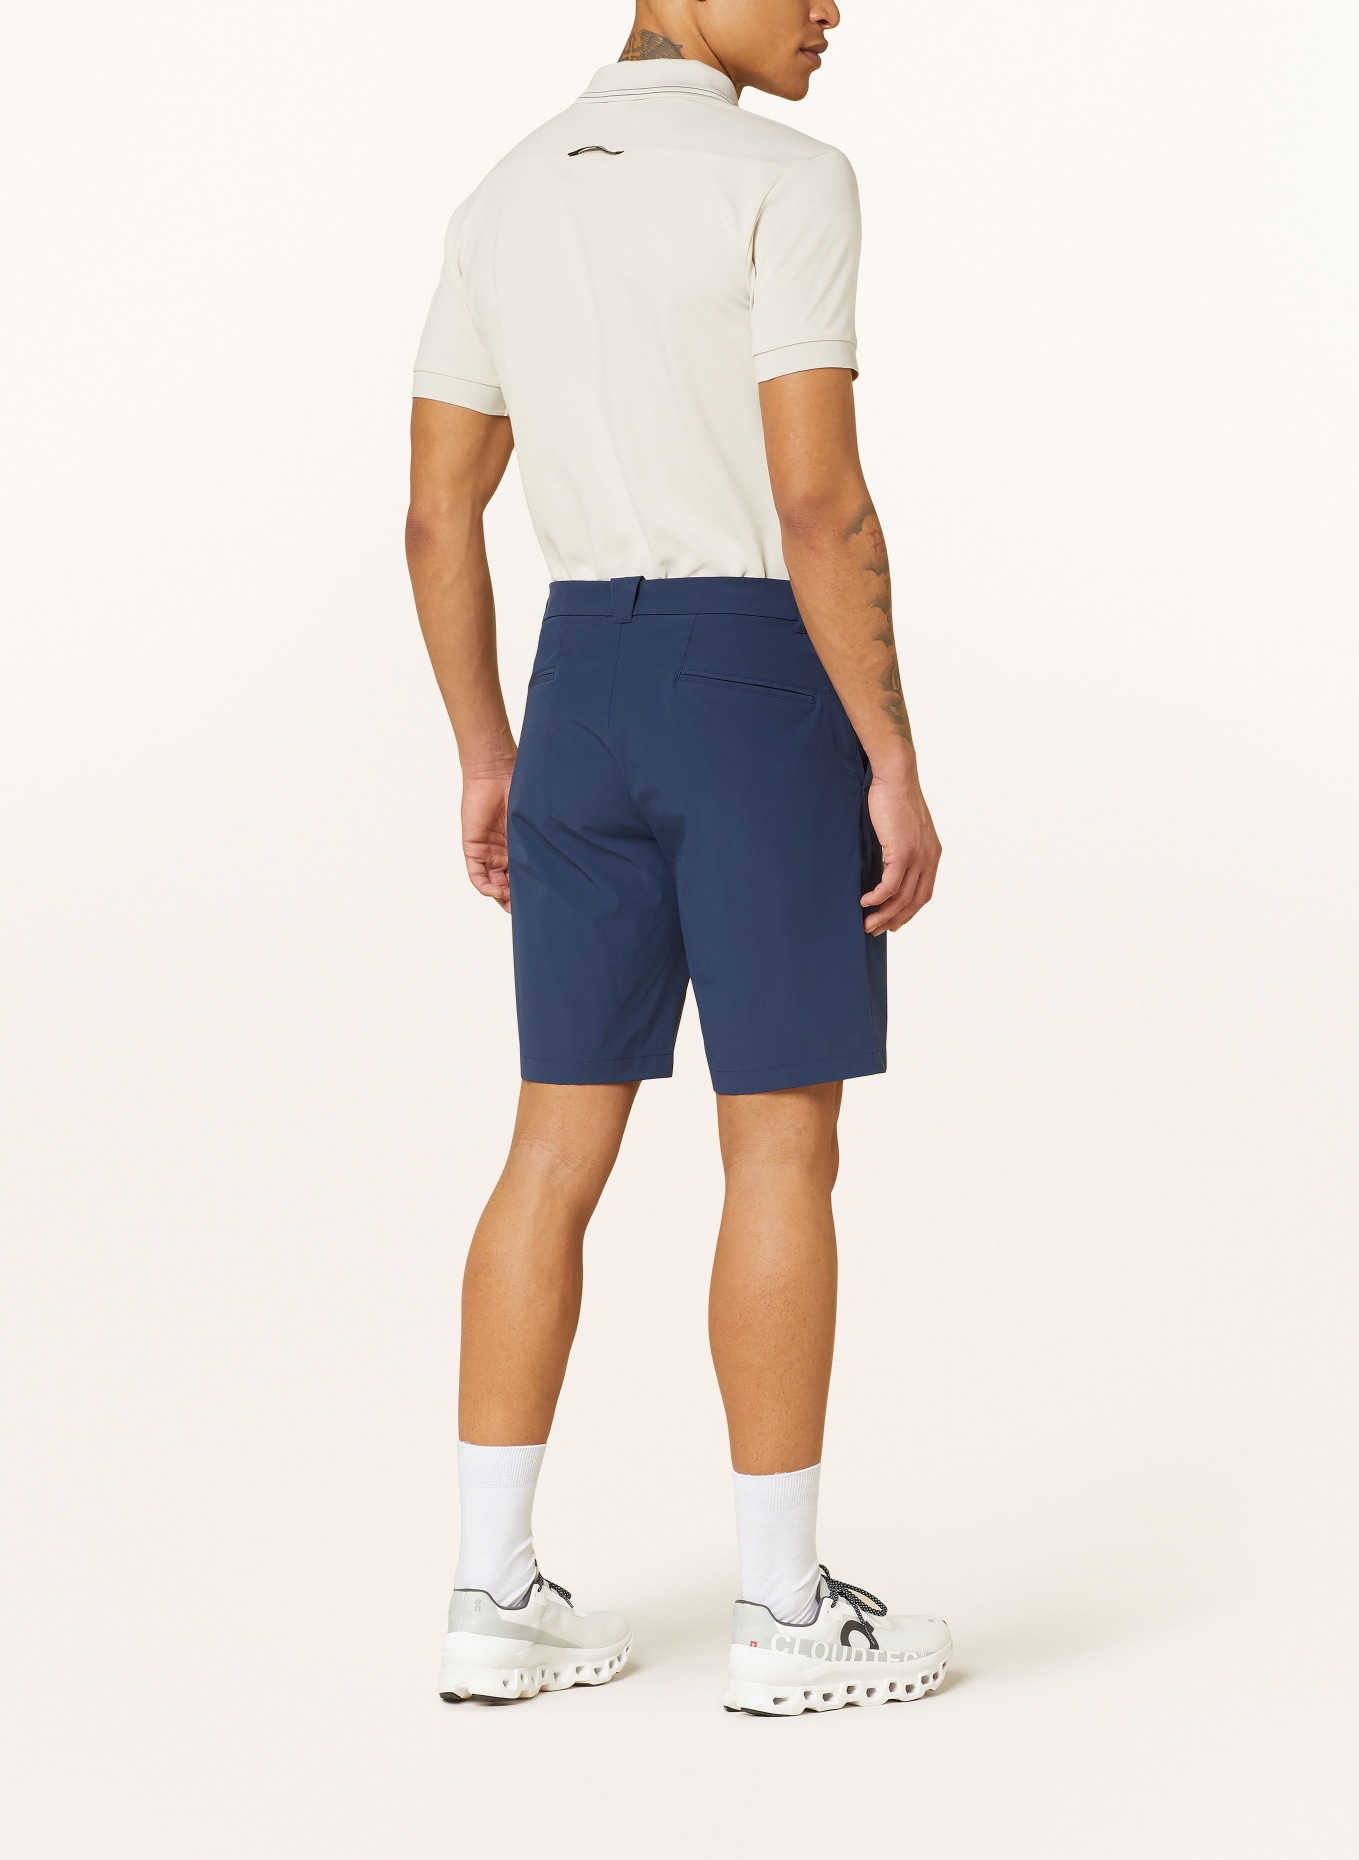 EA7 EMPORIO ARMANI Golf shorts, Color: DARK BLUE (Image 3)